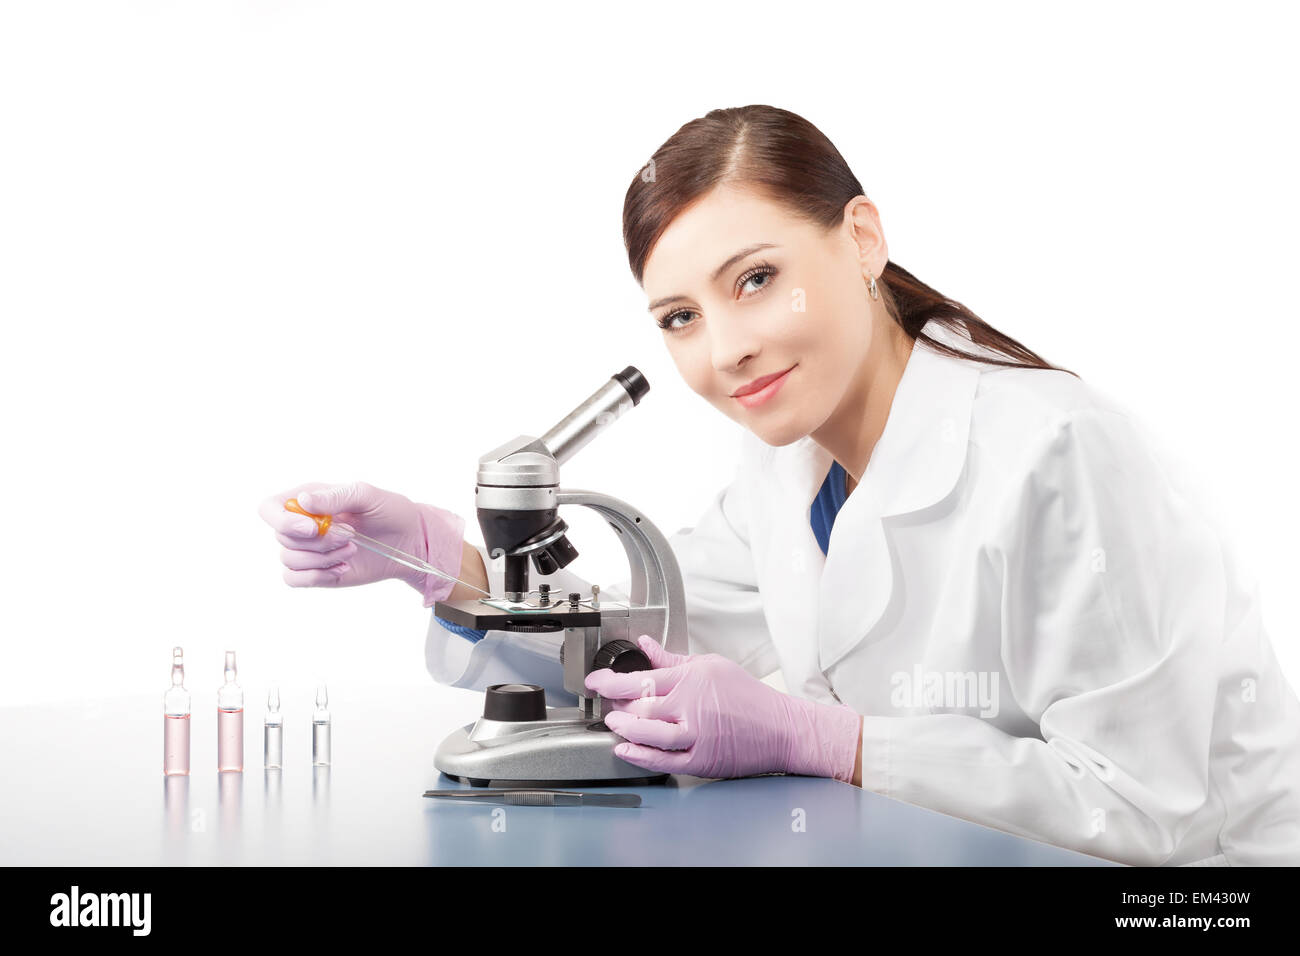 Doctora o investigador científico utilizando microscopio en un laboratorio. Foto de stock